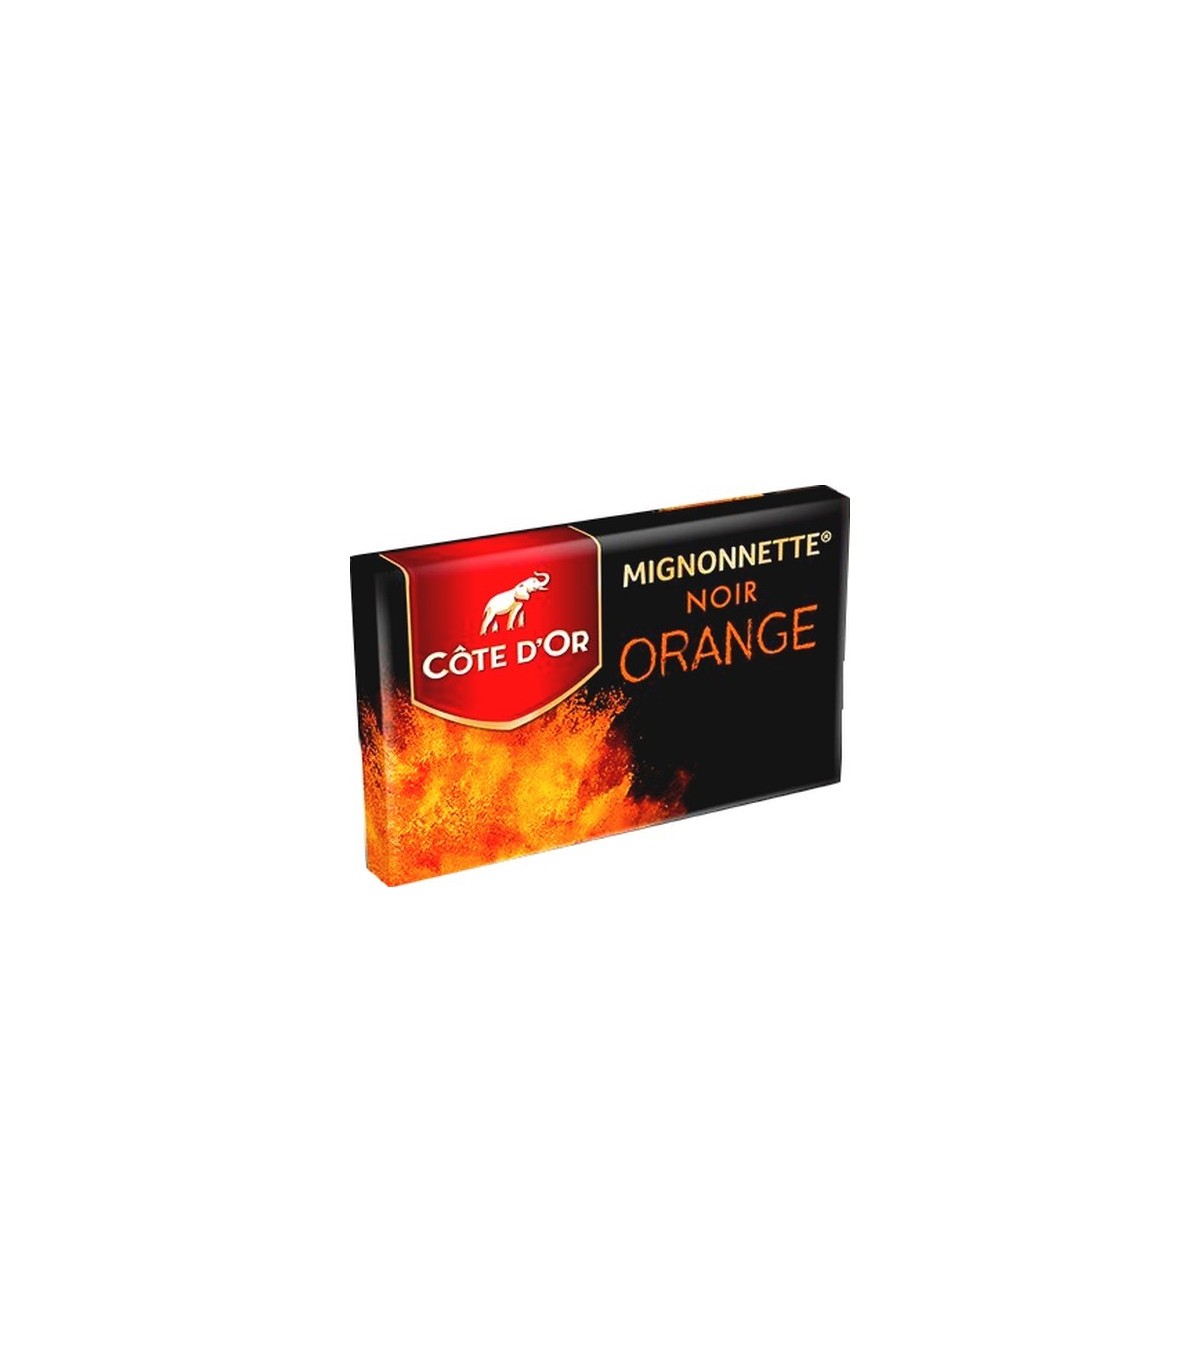 Côte d’Or Noir orange